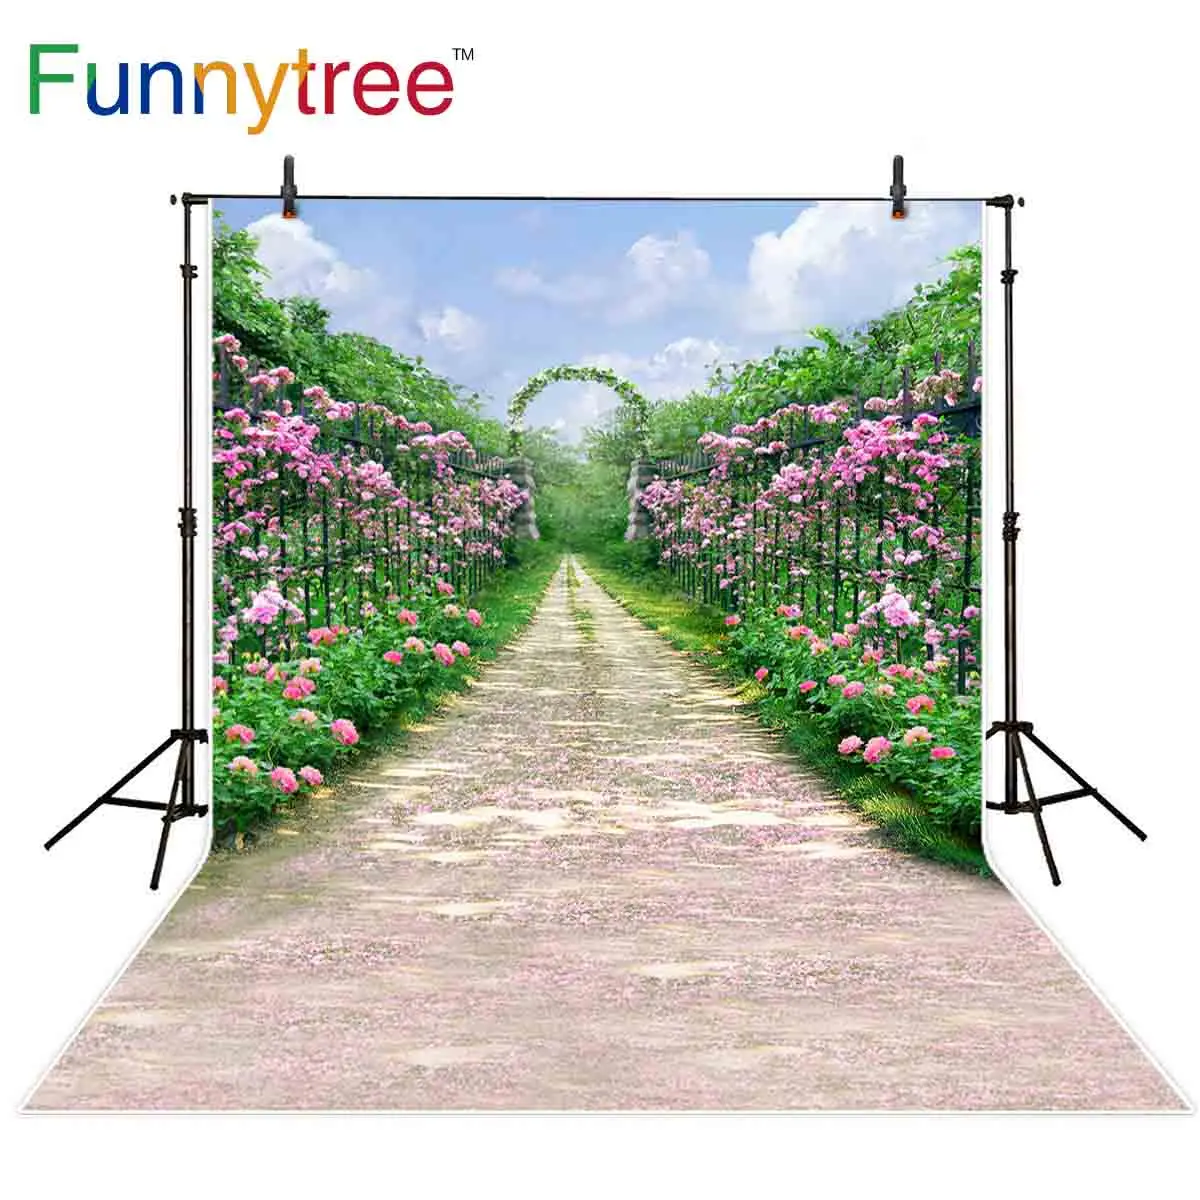 

Фон Funnytree для свадебной фотосъемки Летний сад цветок забор дорога сельская местность фотографический фон для фотостудии